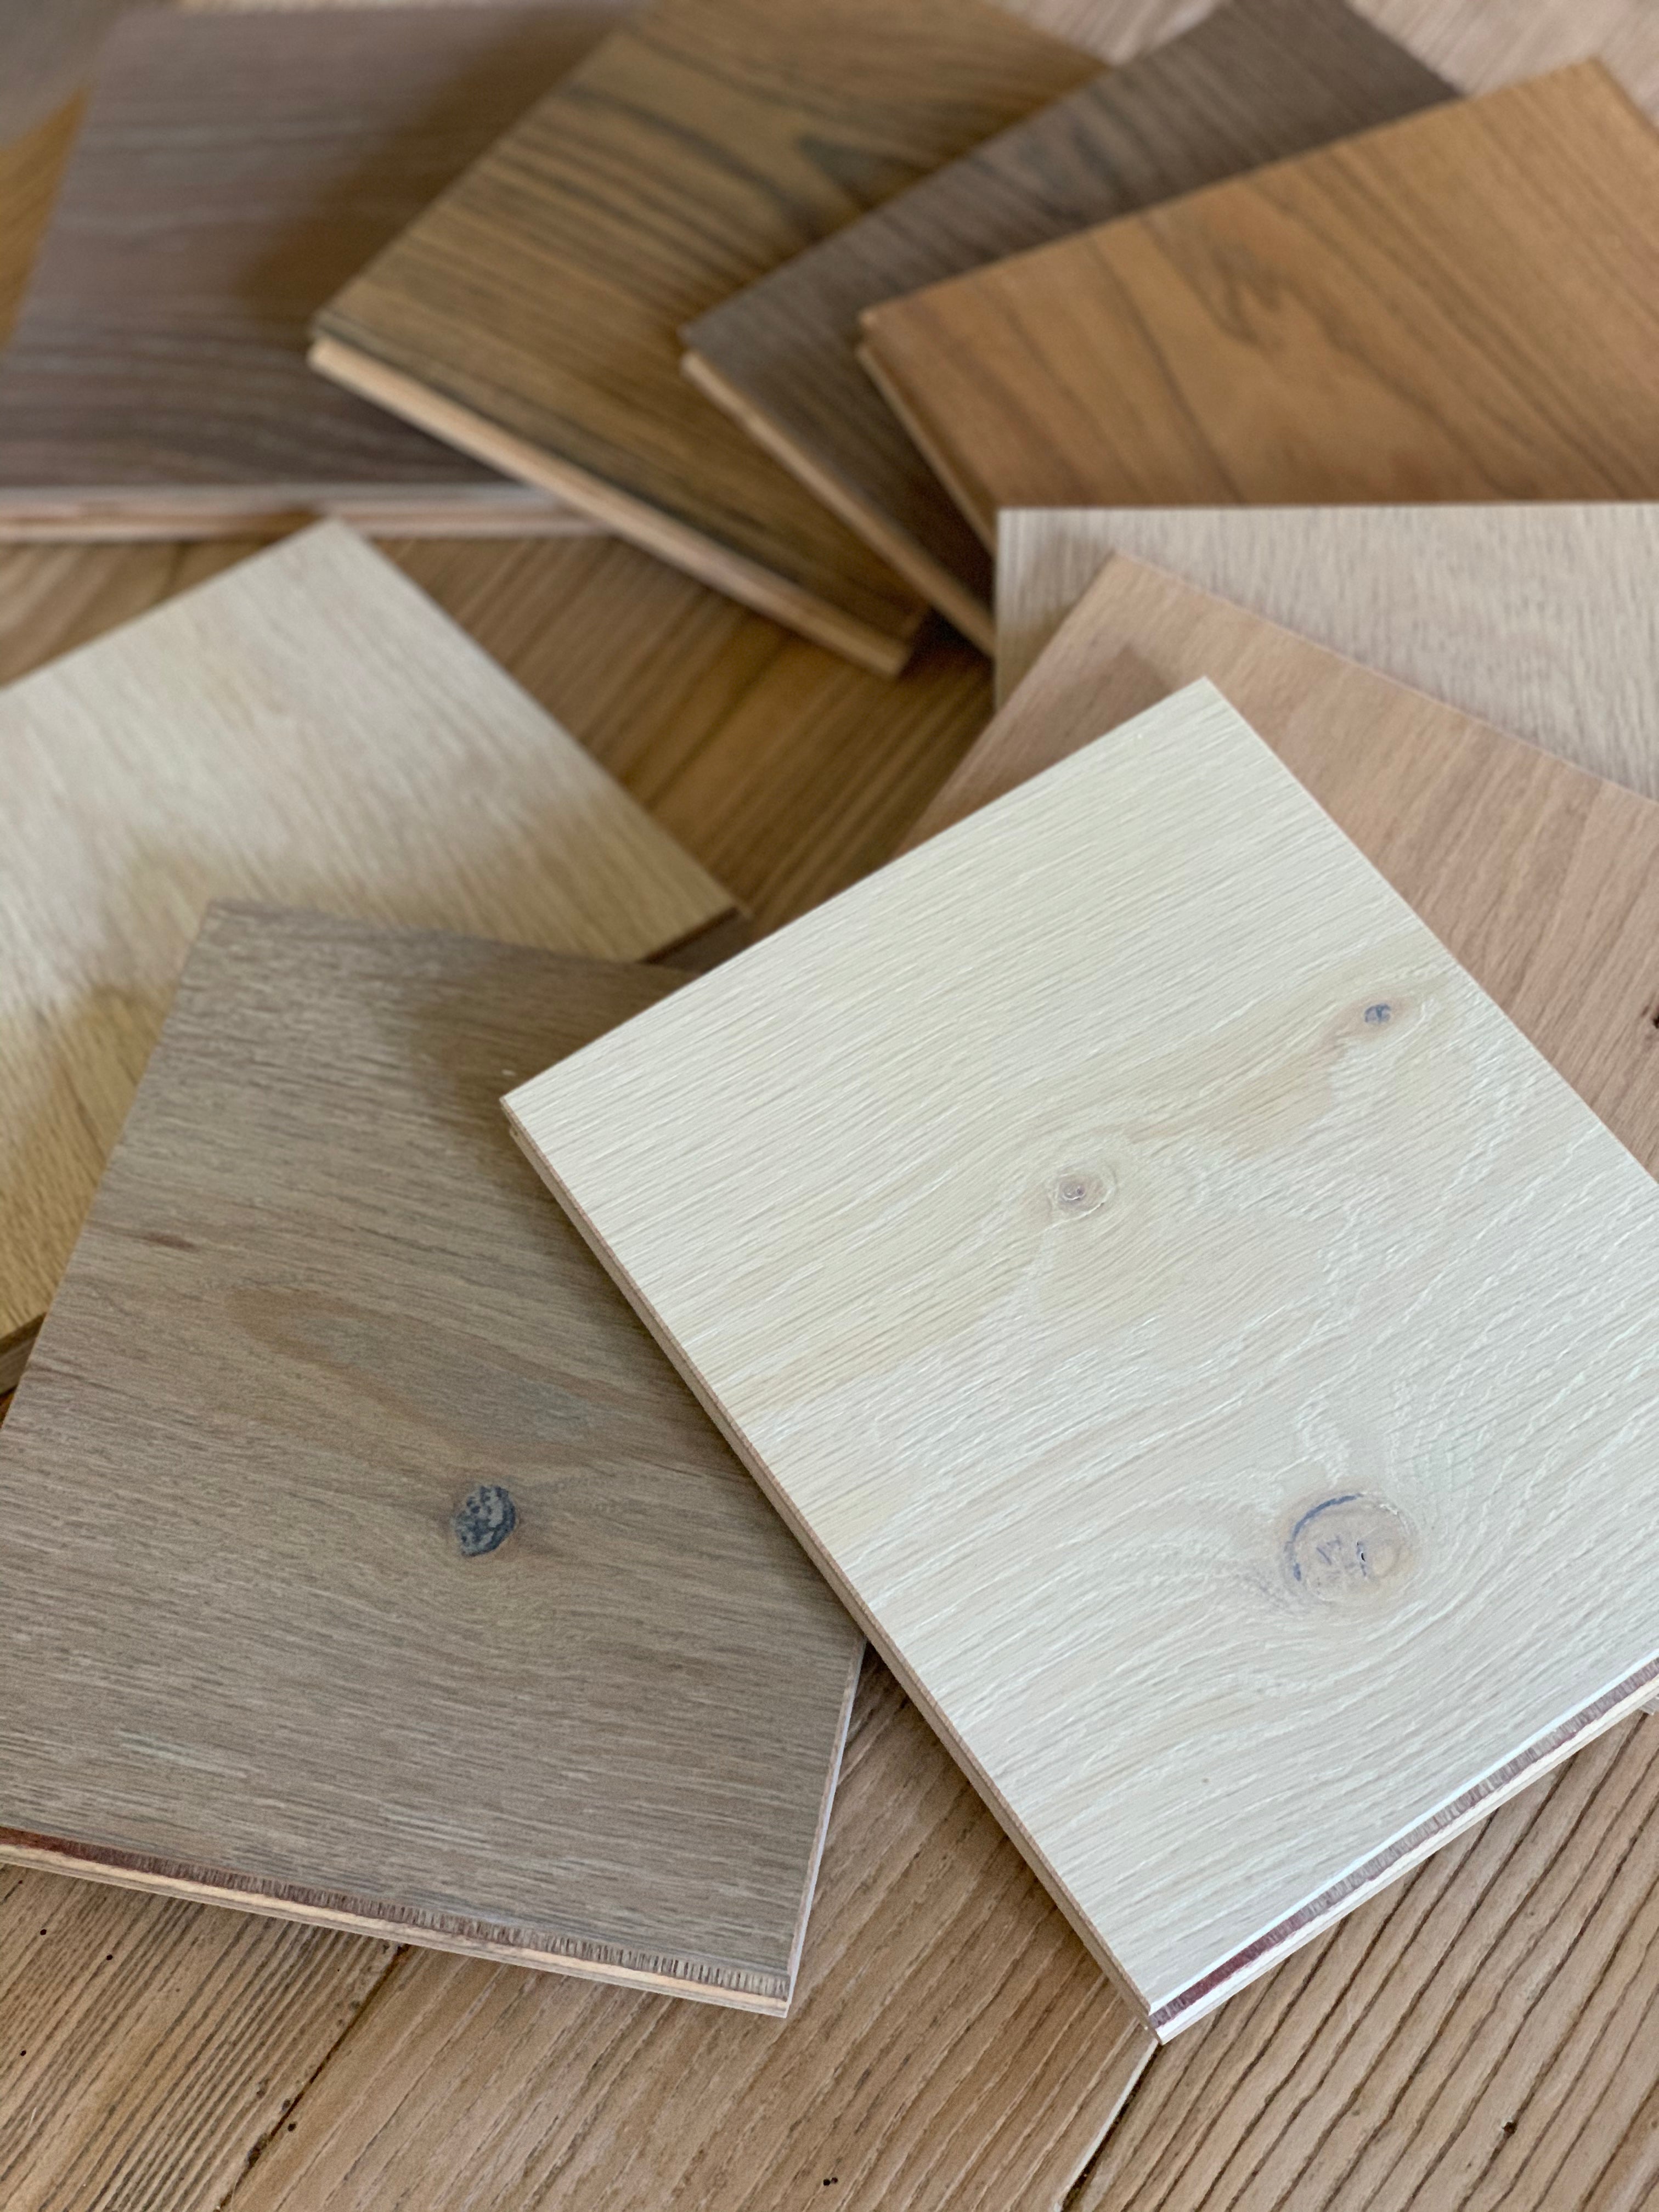 LL hardwood flooring sample kit